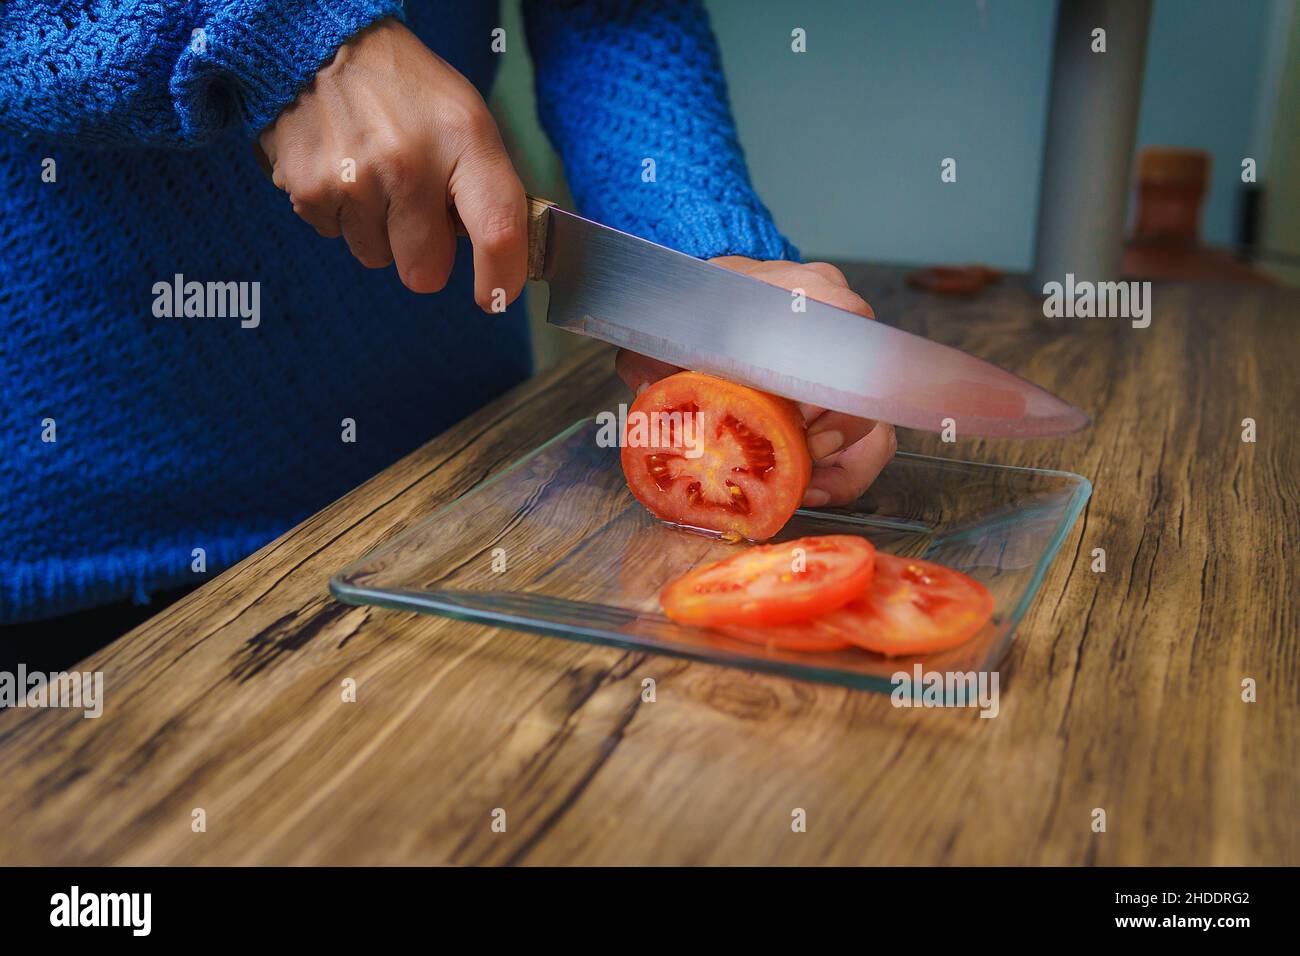 Sul tavolo c'è un tagliere e si possono vedere le mani di una donna che tagliano cipolle bianche con un coltello da chef. Foto Stock